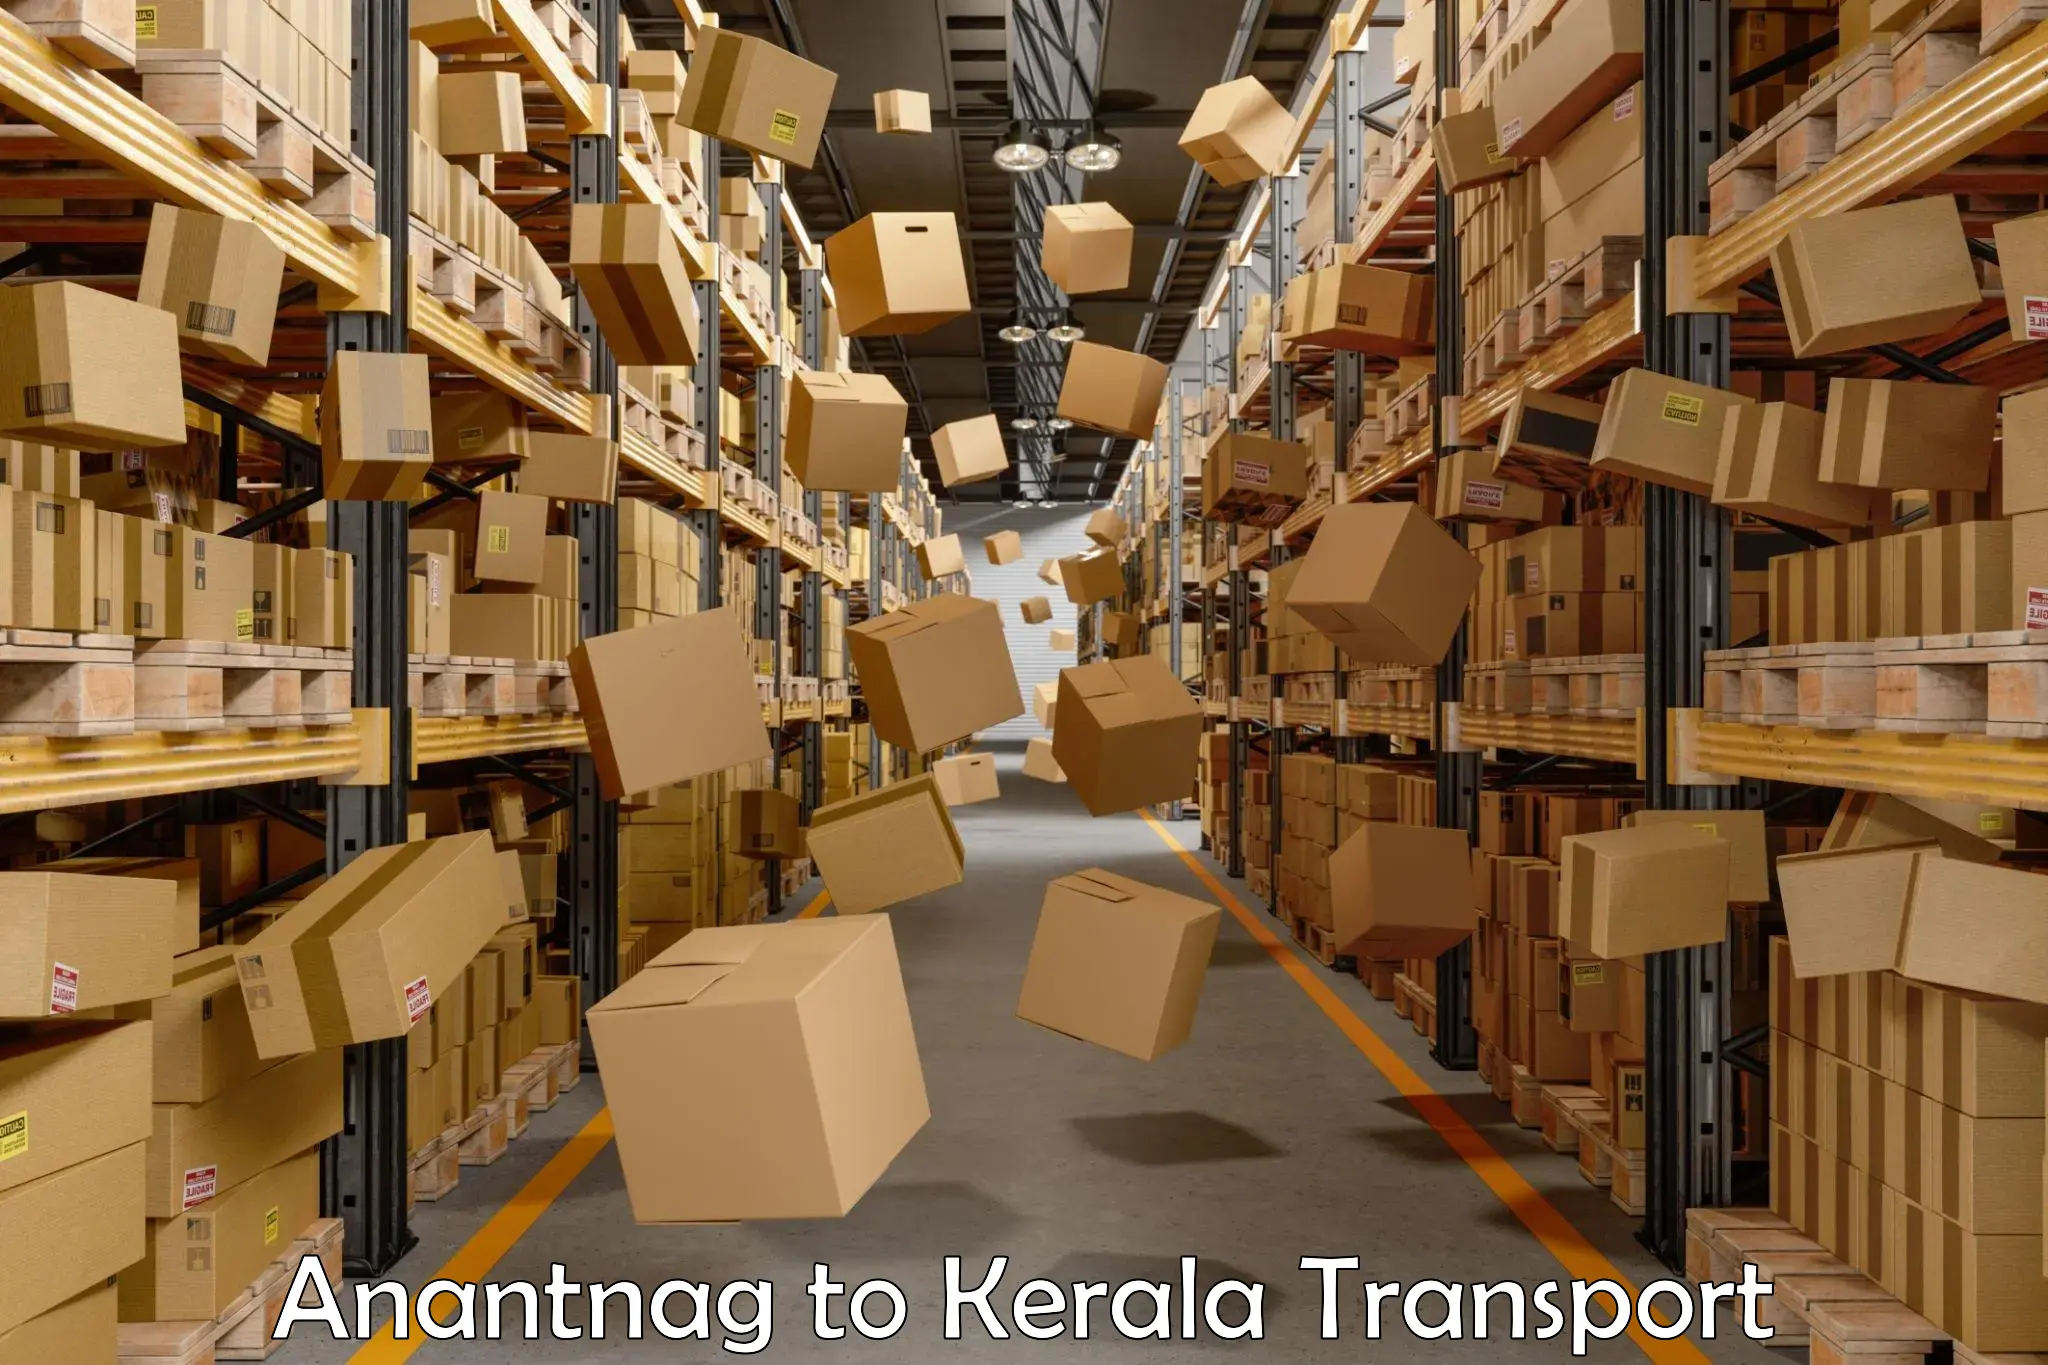 Cycle transportation service Anantnag to Kerala